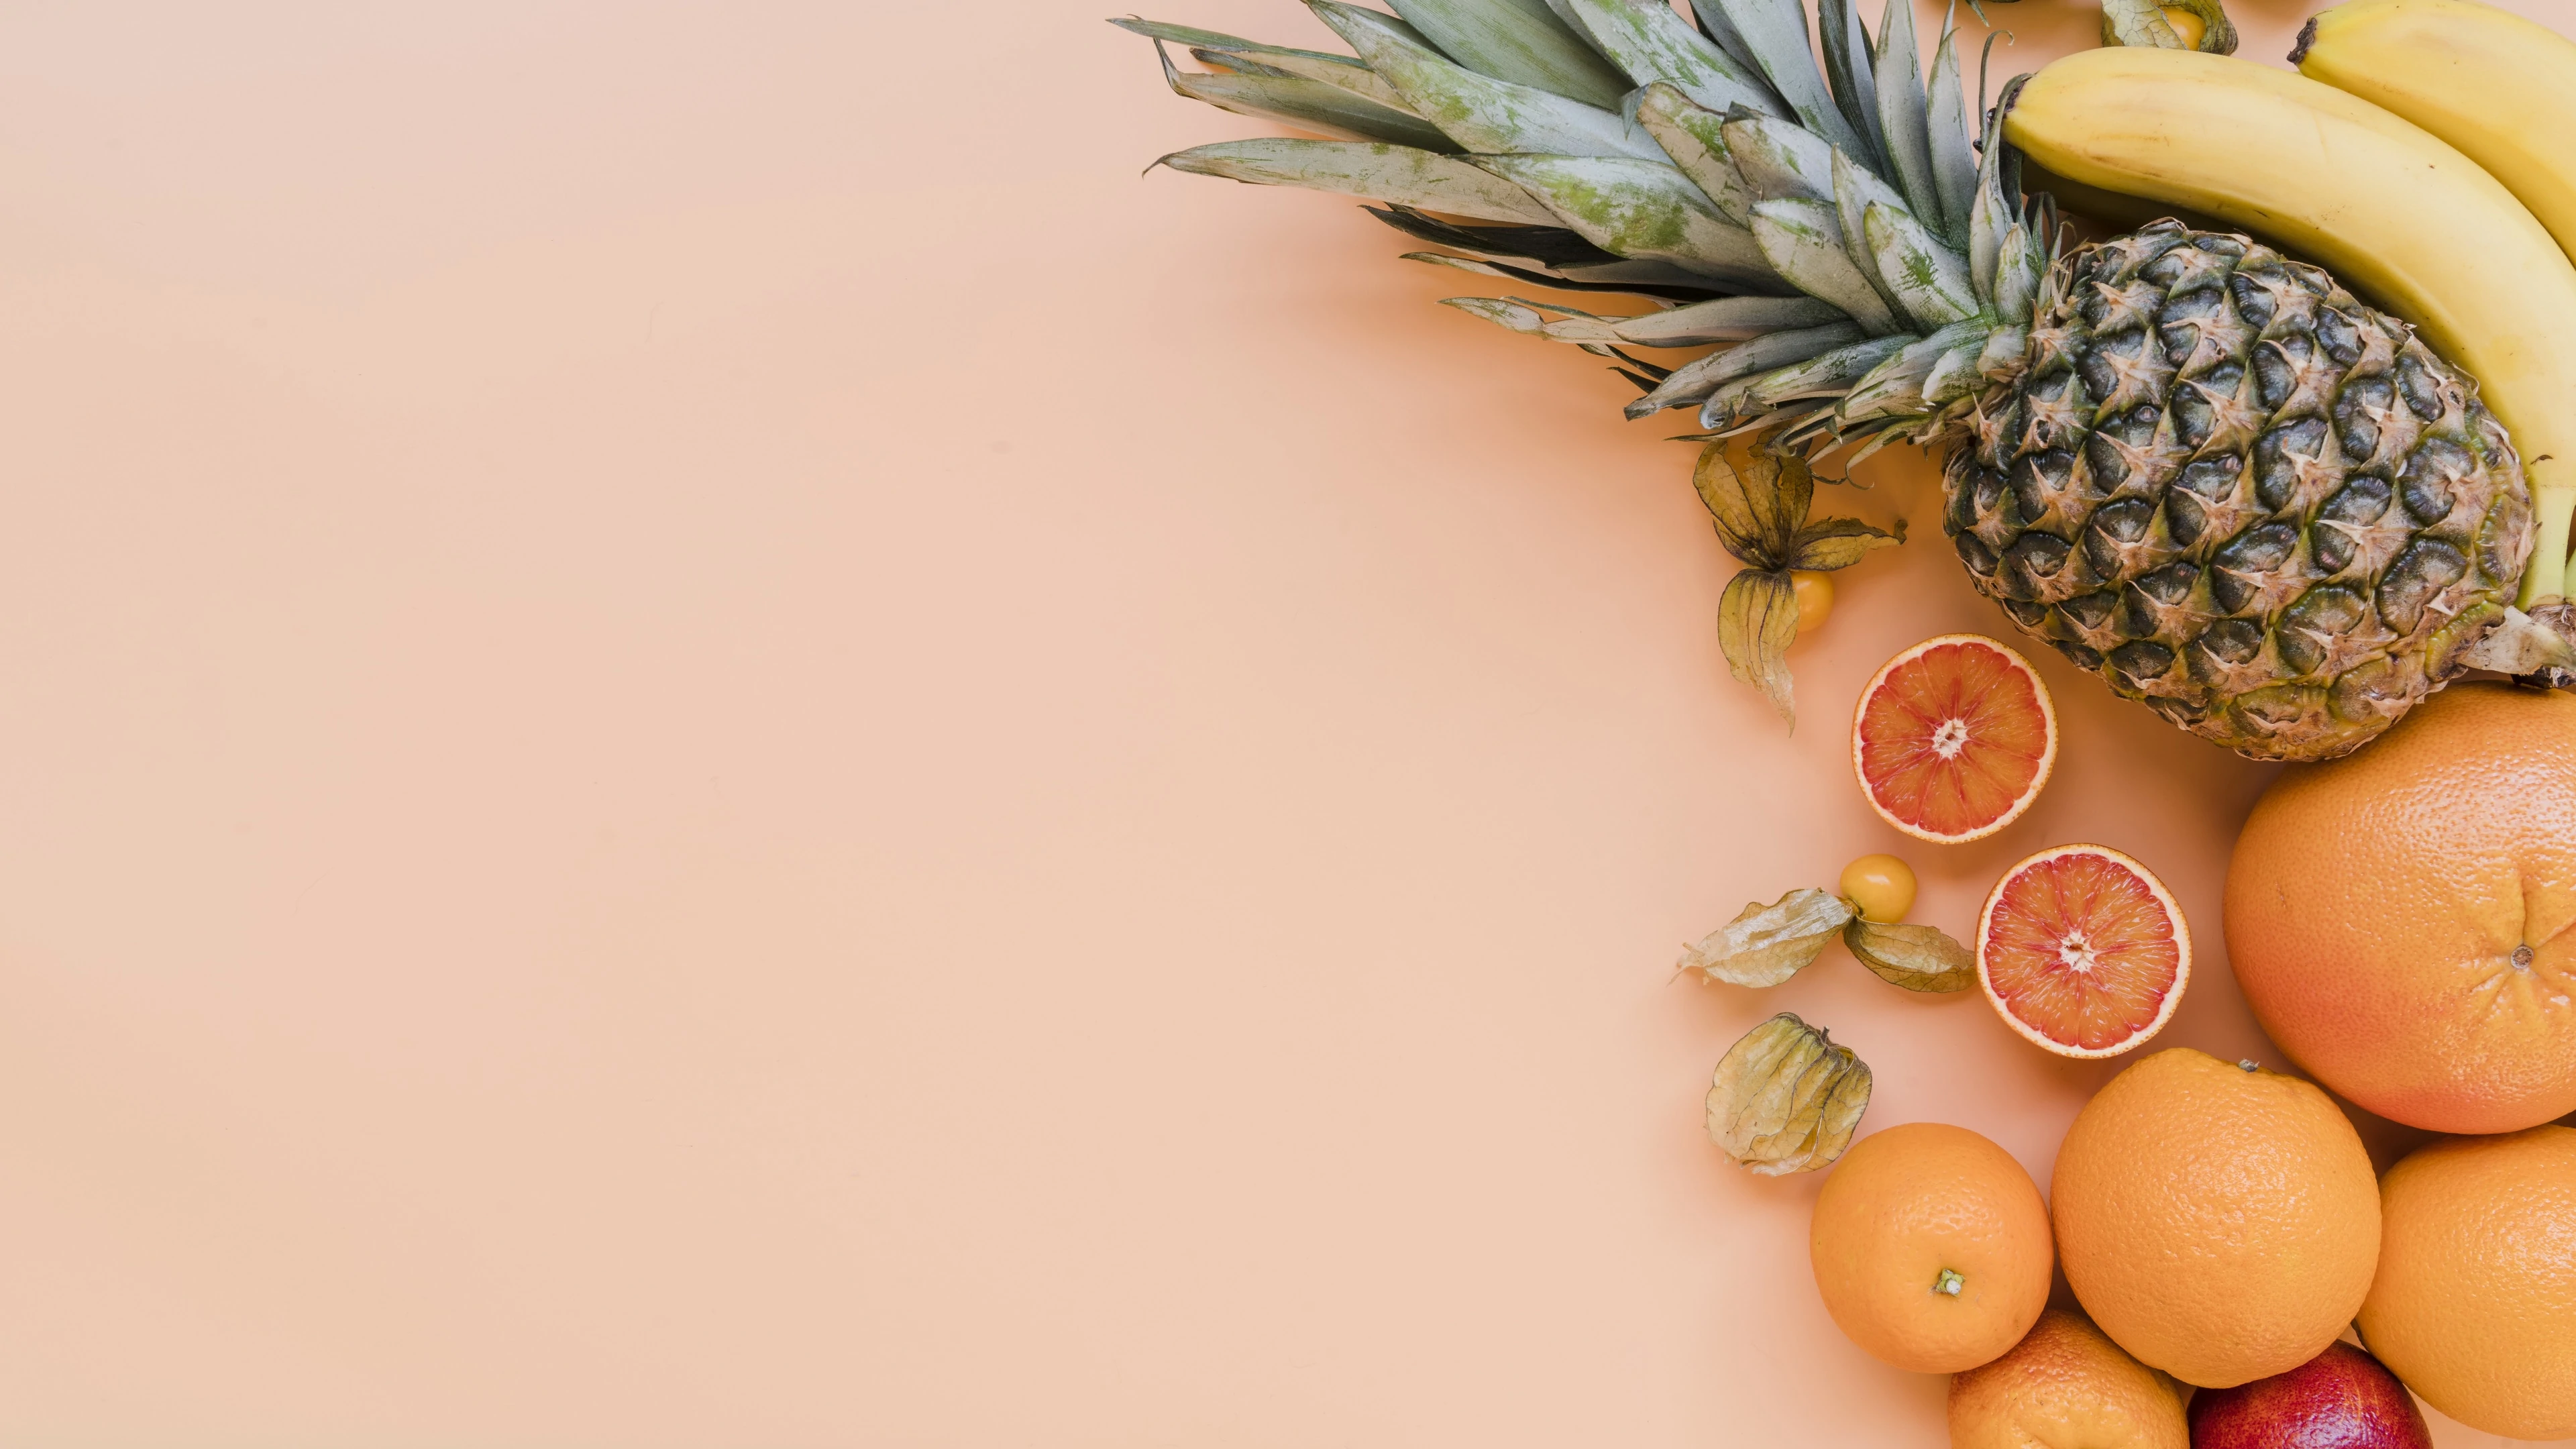 Delicious fresh fruits on orange background